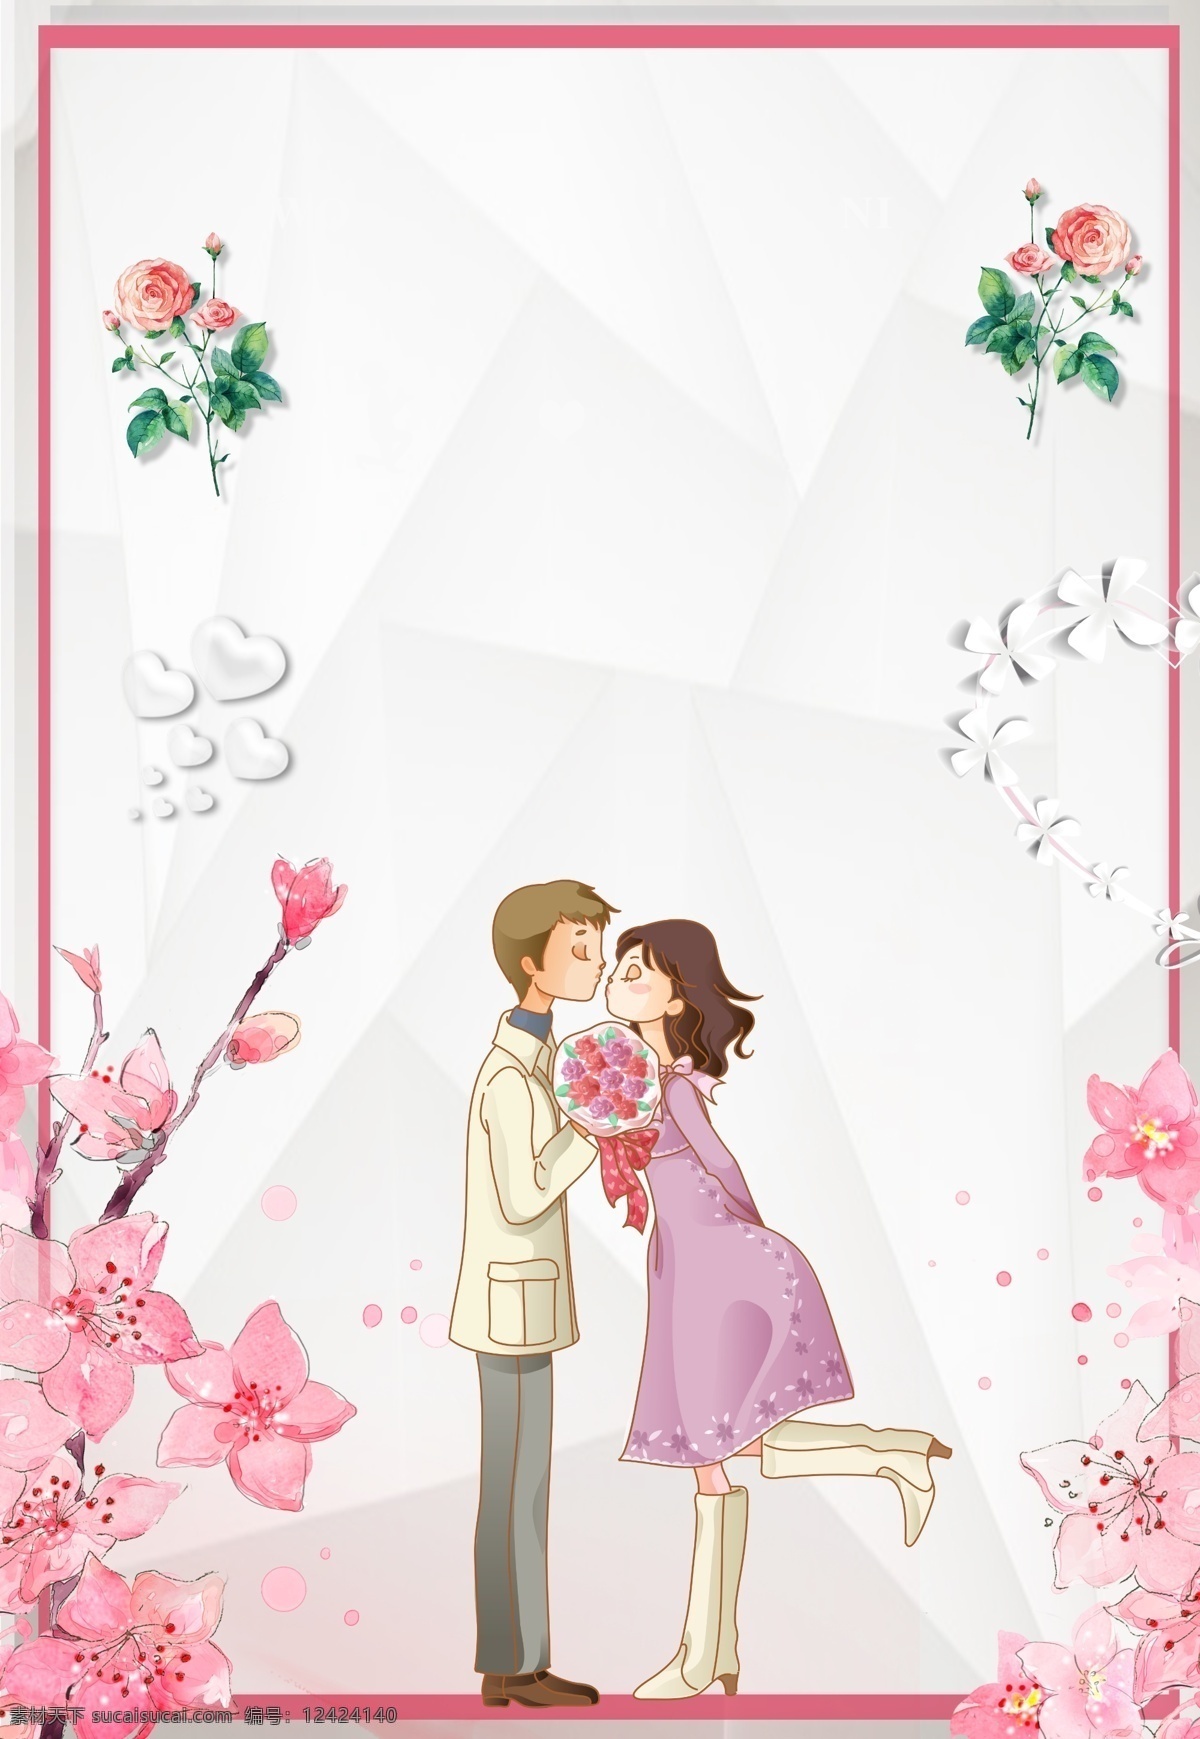 彩绘 浪漫婚礼 背景 婚礼素材 婚礼背景 浪漫 情侣 结婚背景 花朵背景 彩绘背景 婚礼主题 新郎 新娘